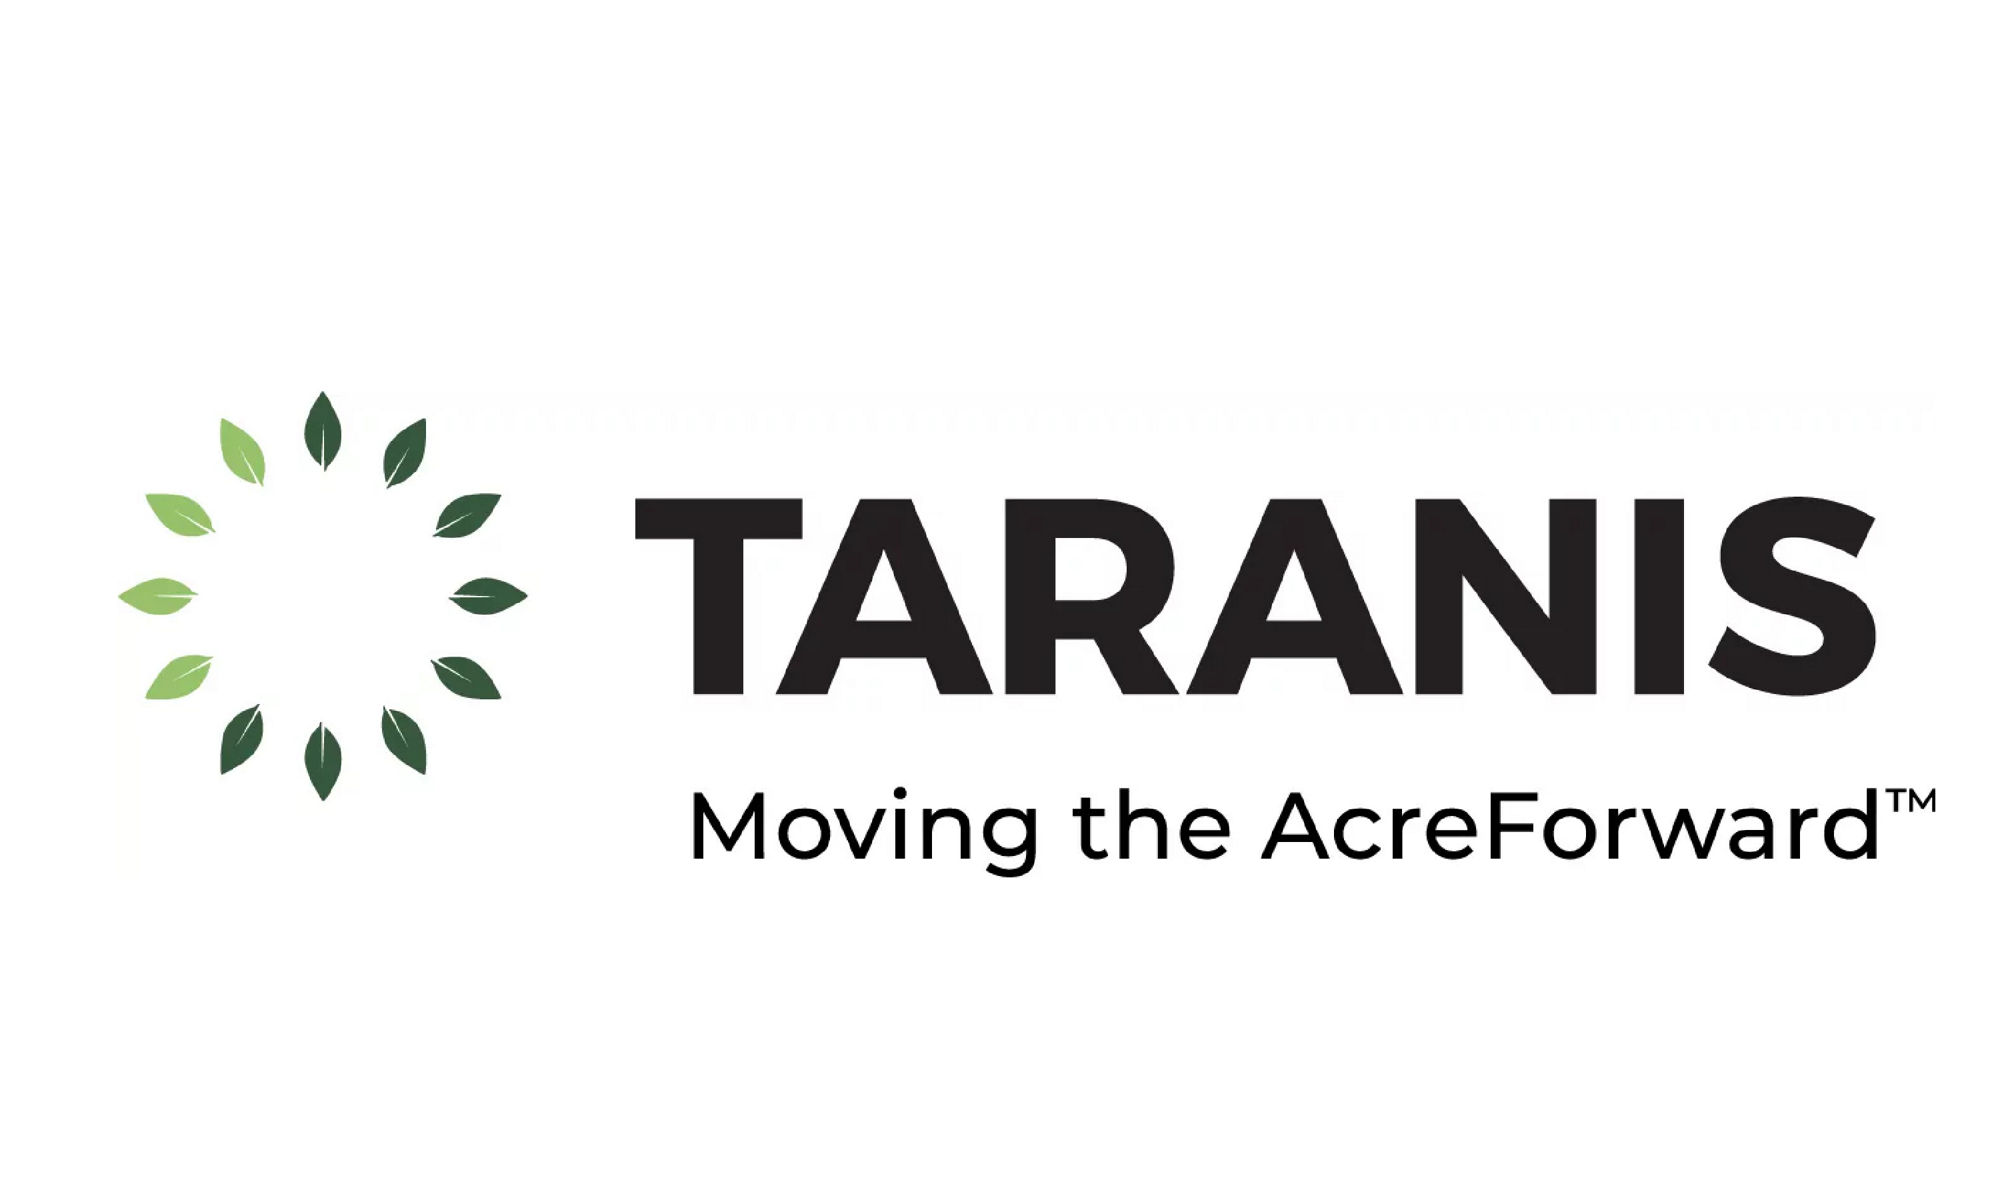 Teranis company logo